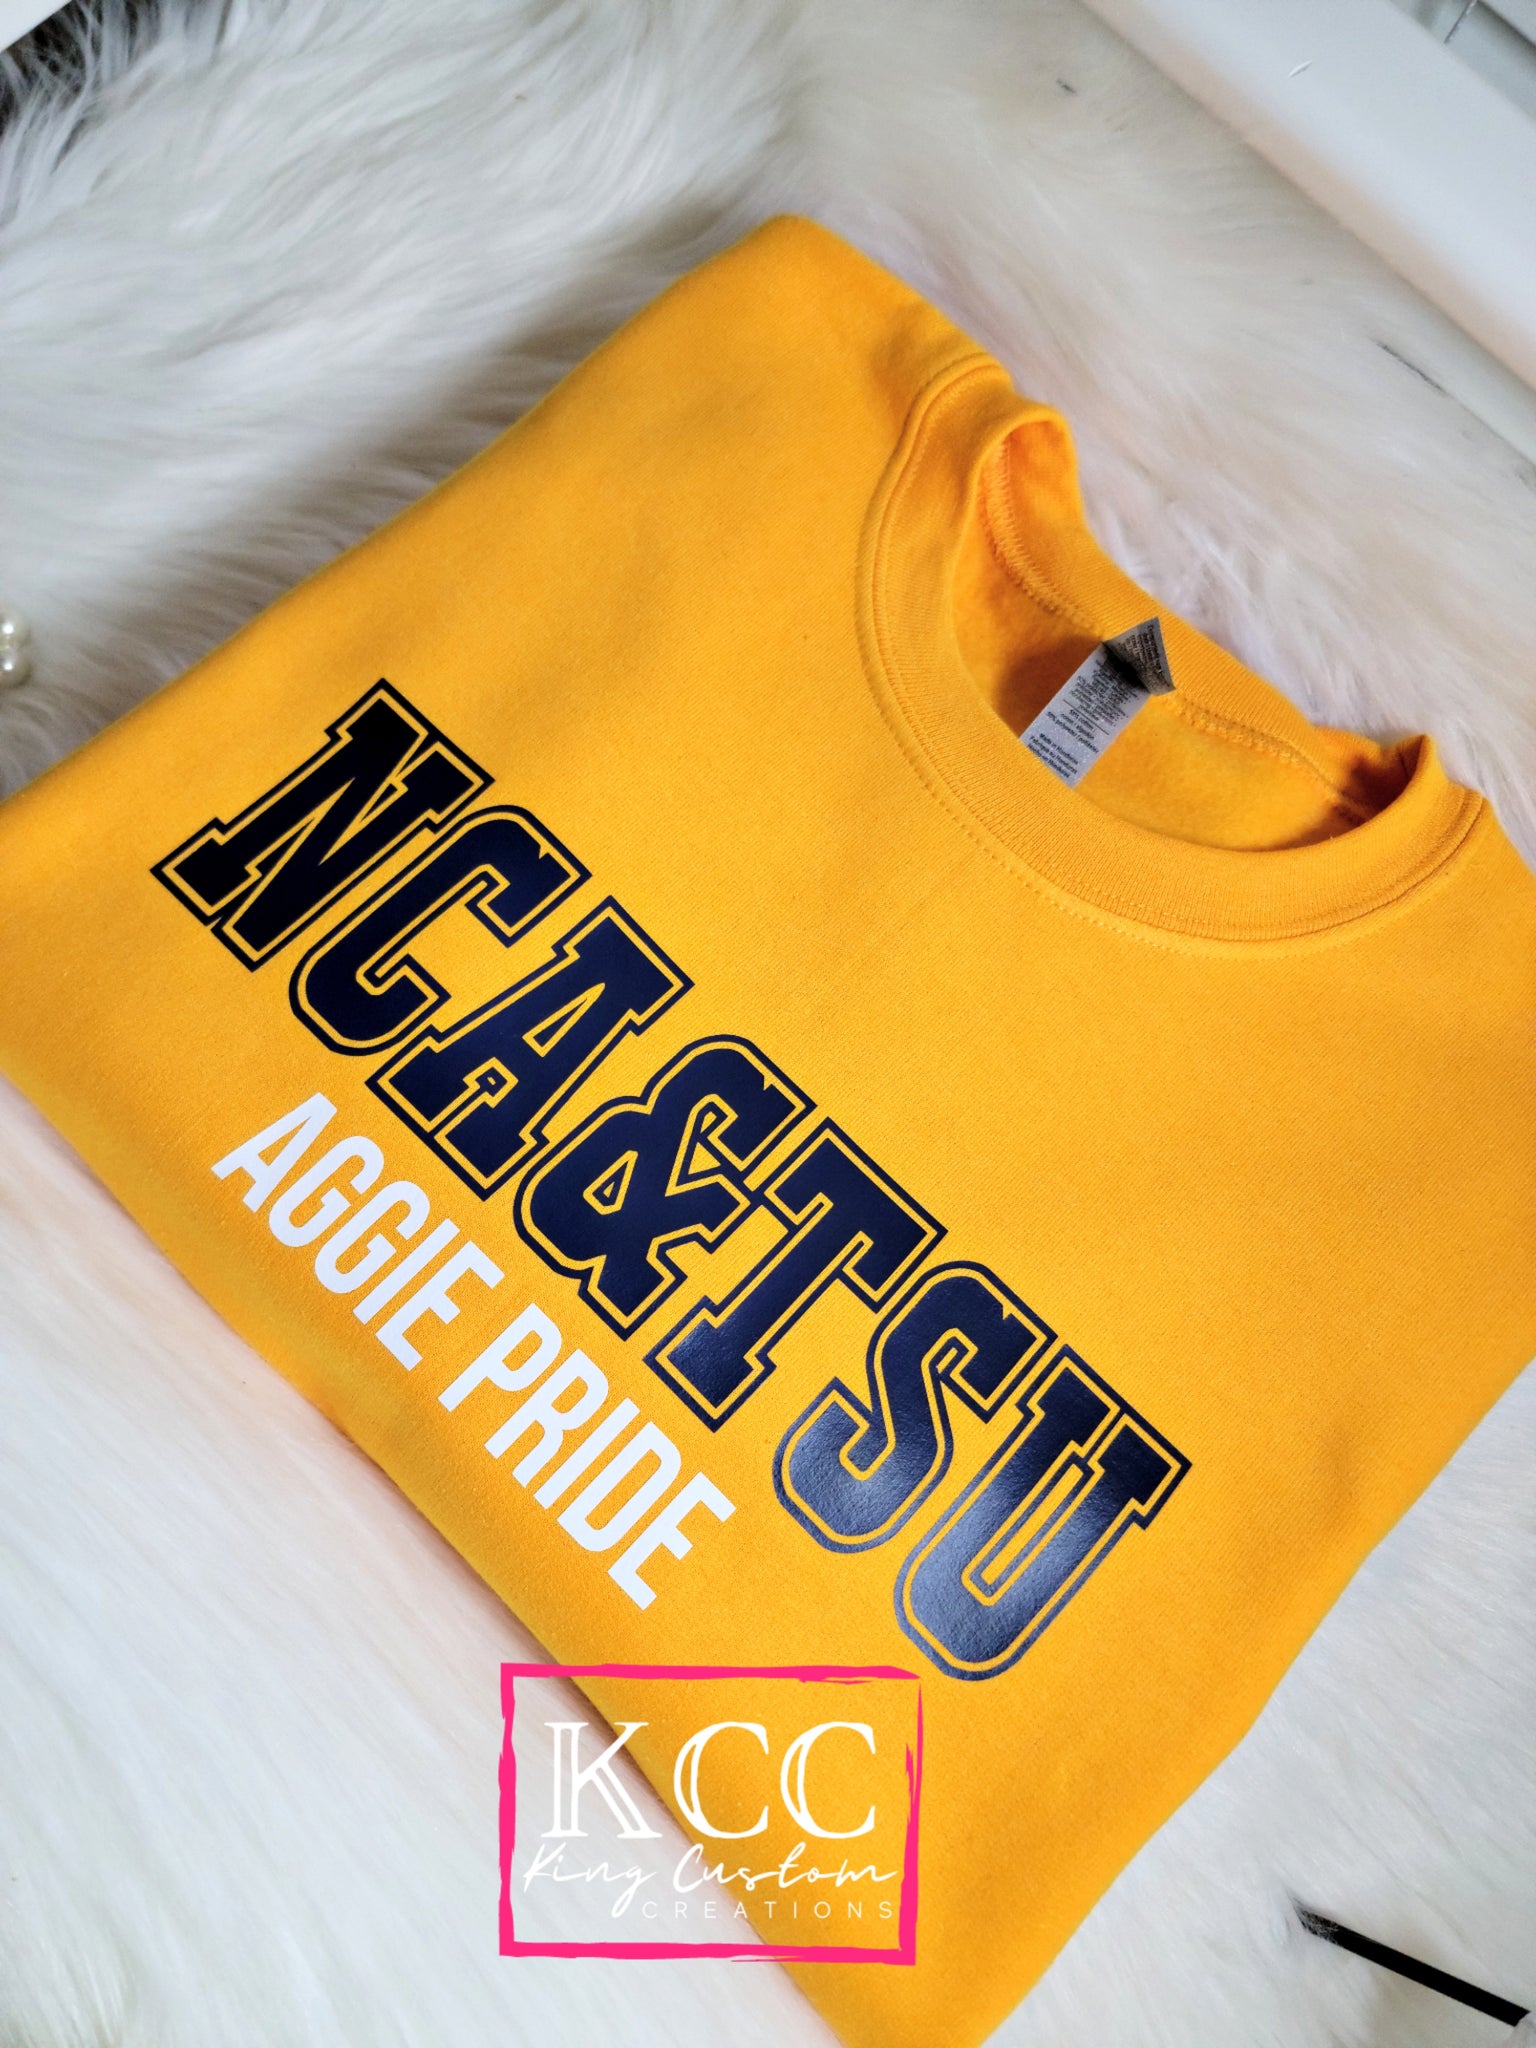 HBCU - NCA&TSU AGGIE PRIDE Sweatshirt